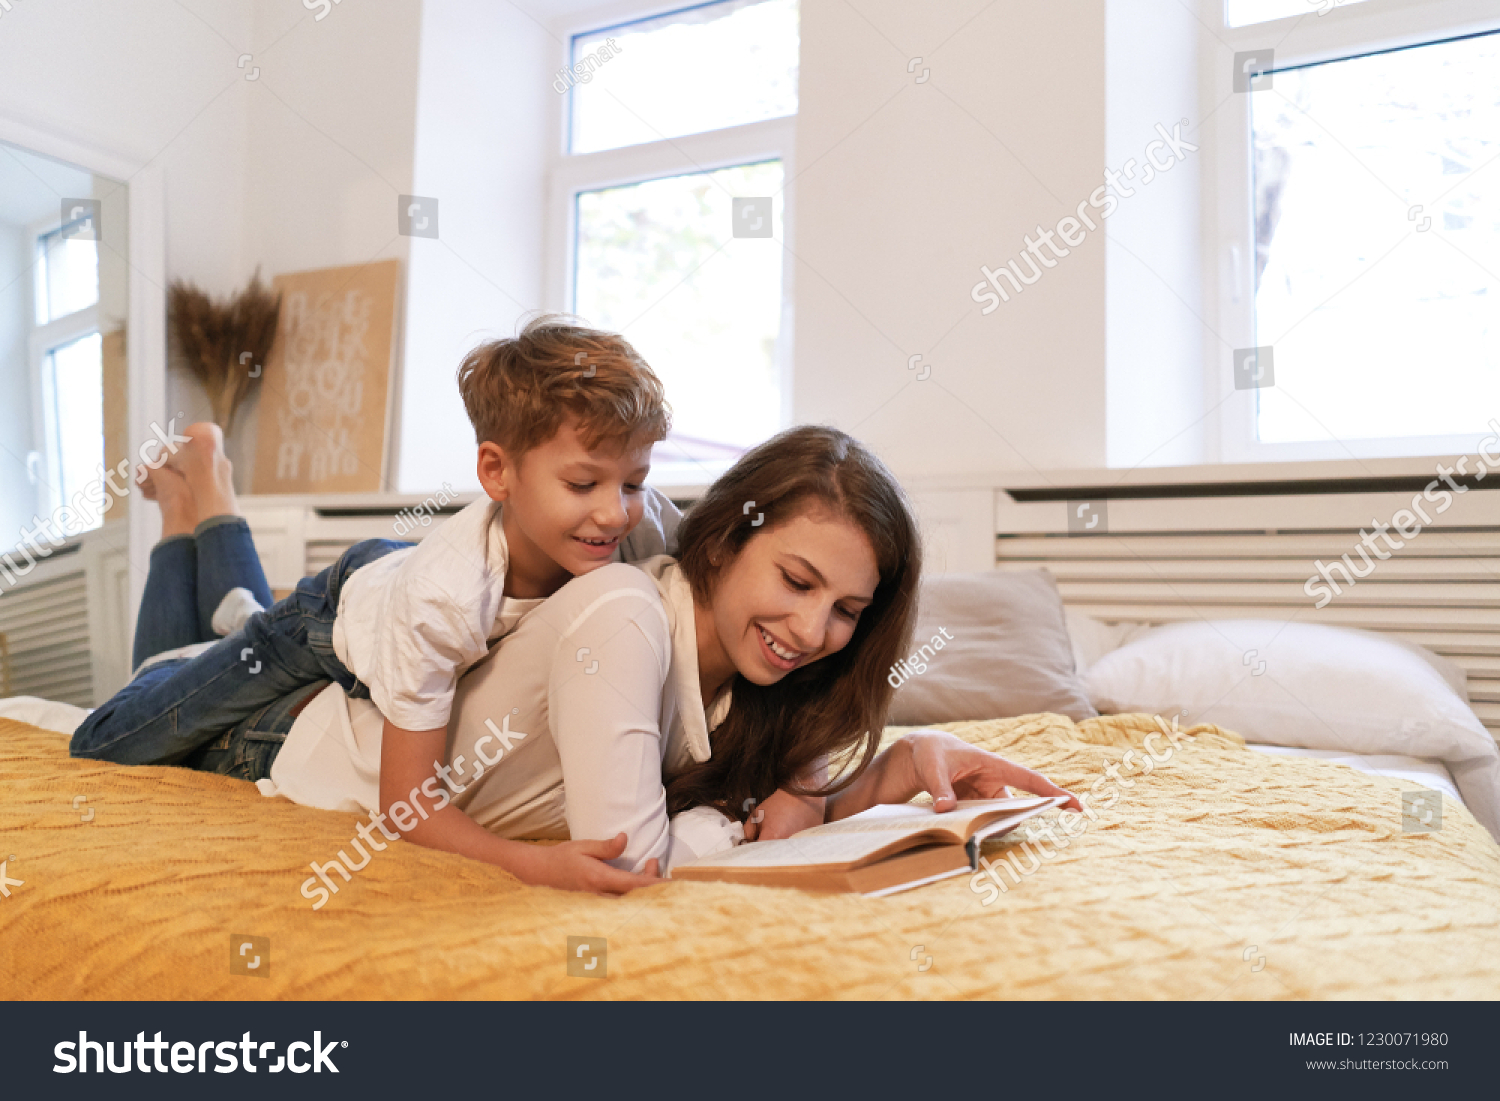 мальчик с мамой в кровати